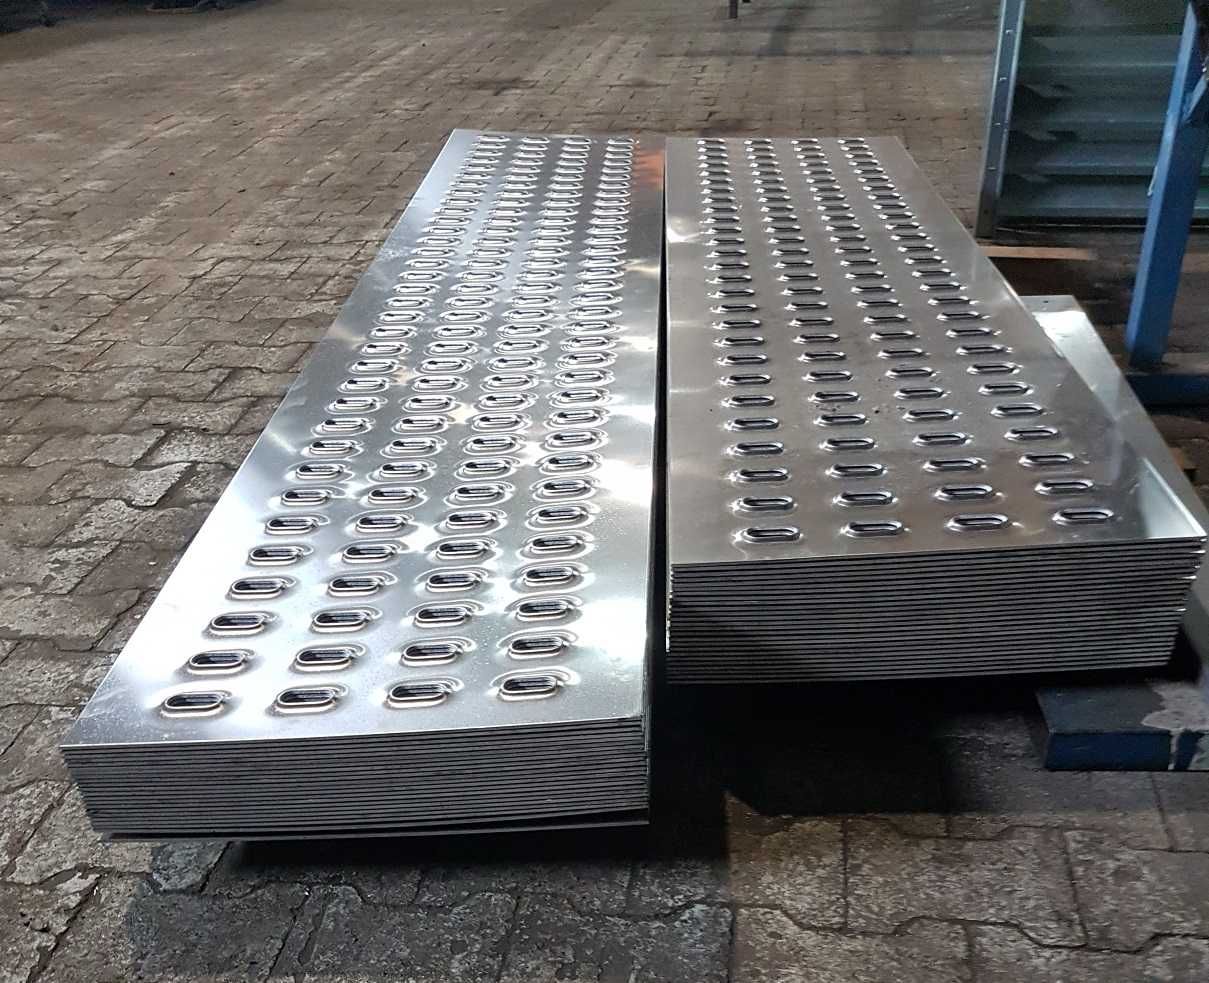 Blacha aluminiowa LOHR 500 mm. Różne długości.135 zł/mb